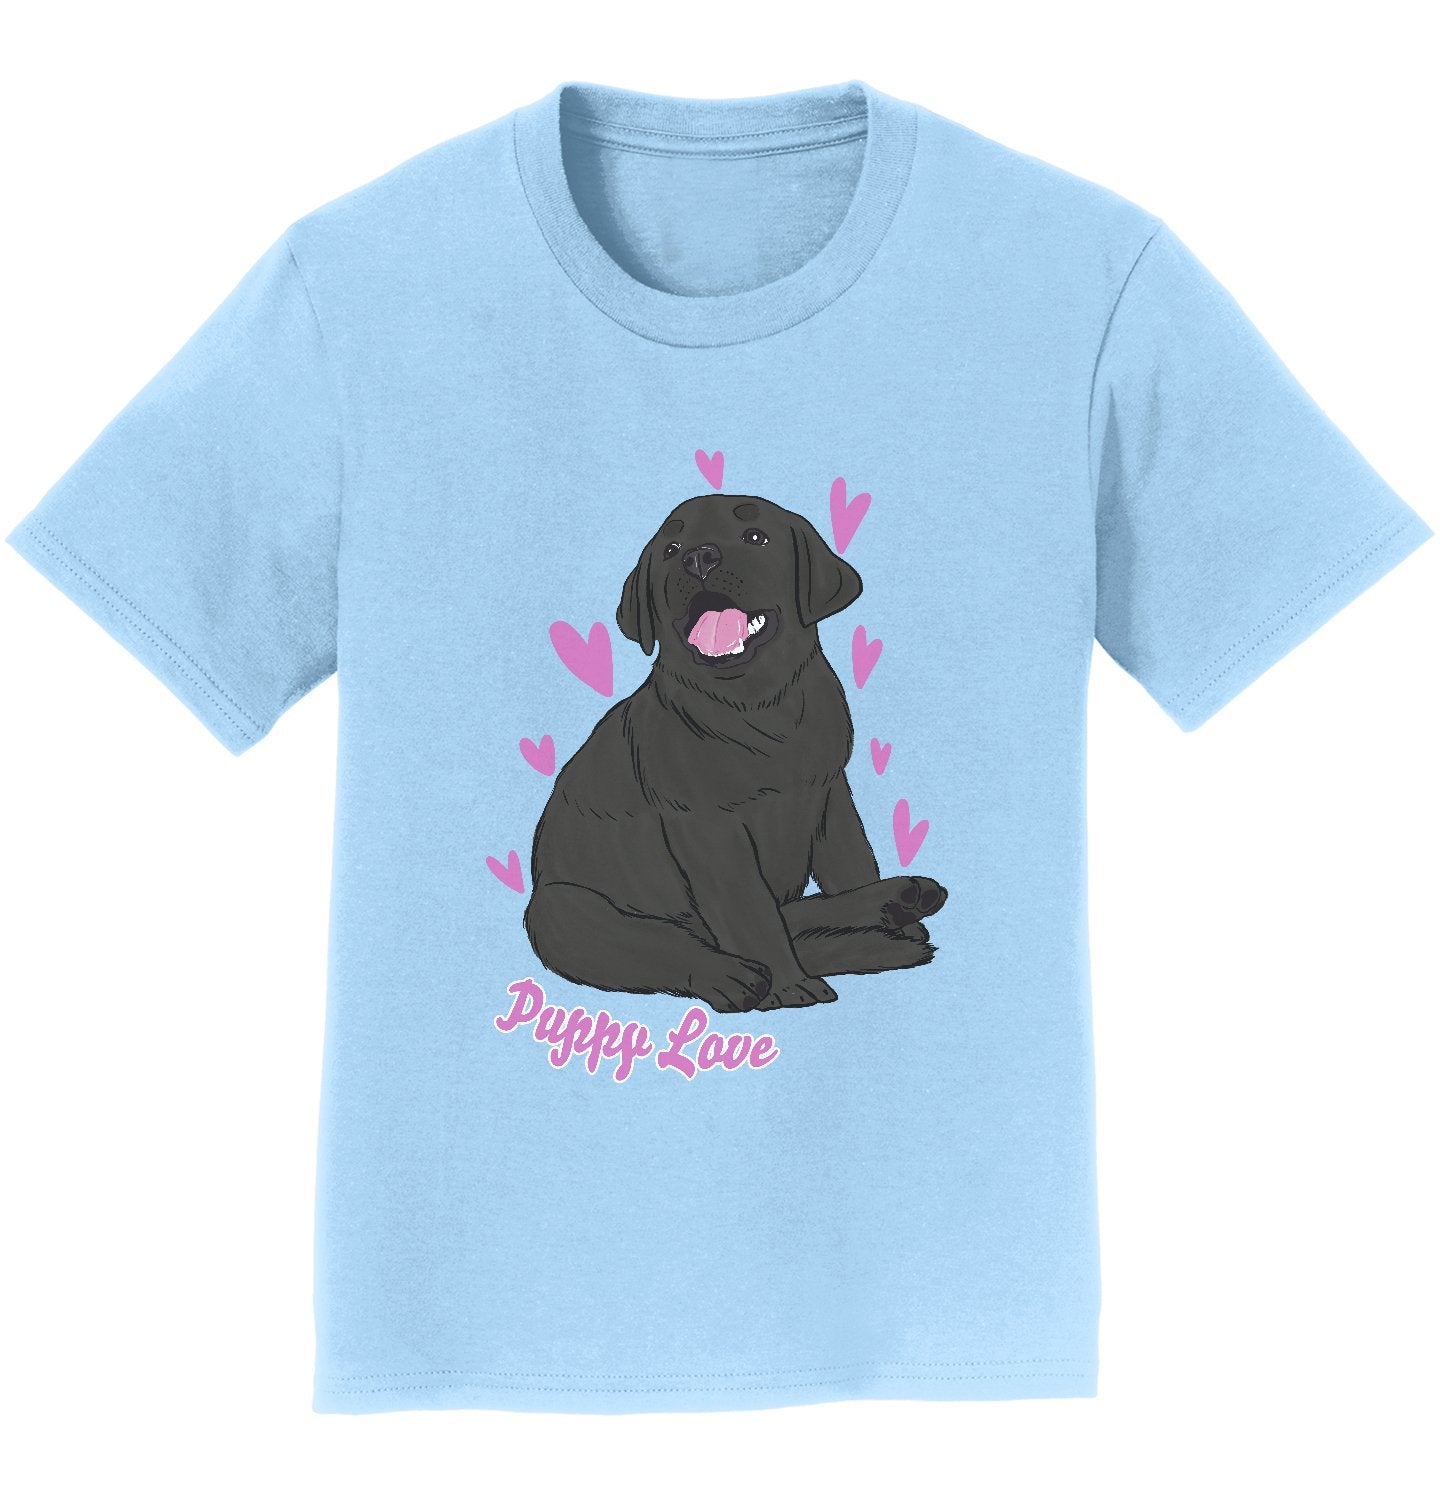 Black Labrador Puppy Love - Kids' Unisex T-Shirt